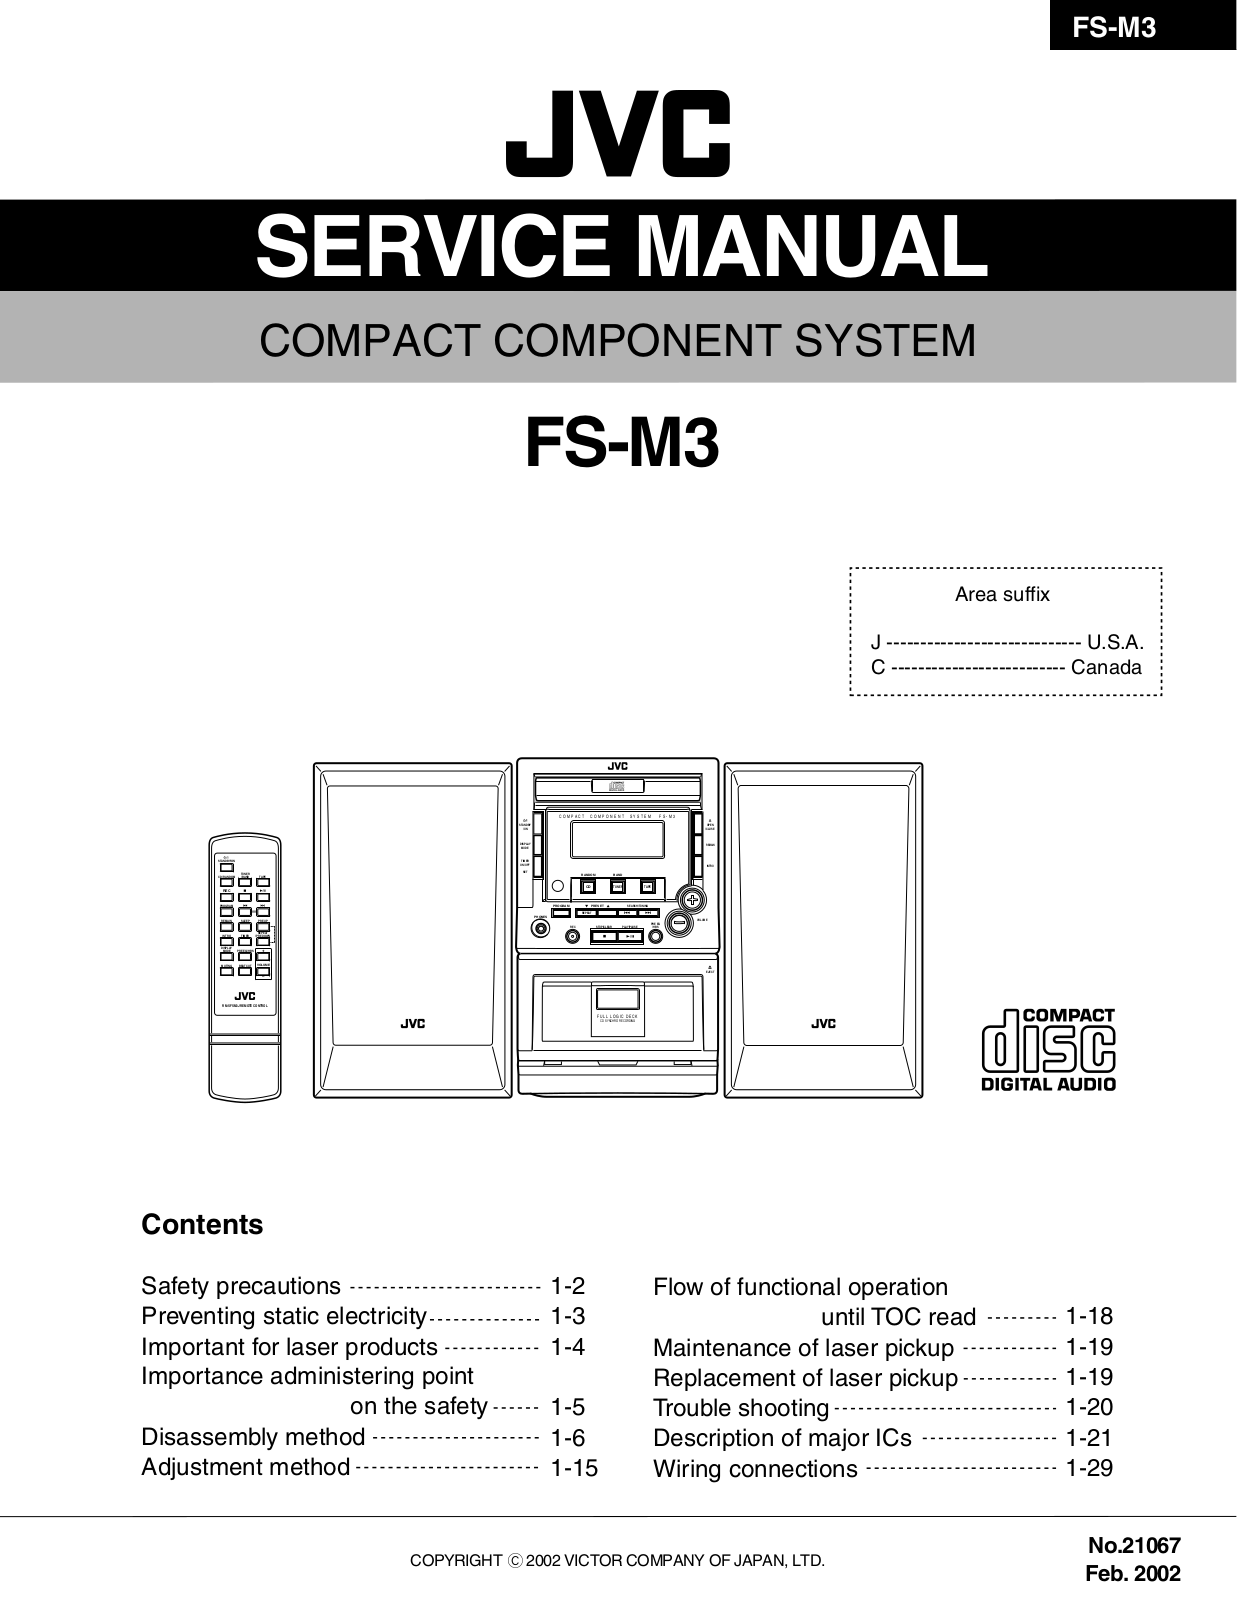 Jvc FS-M3 Service Manual